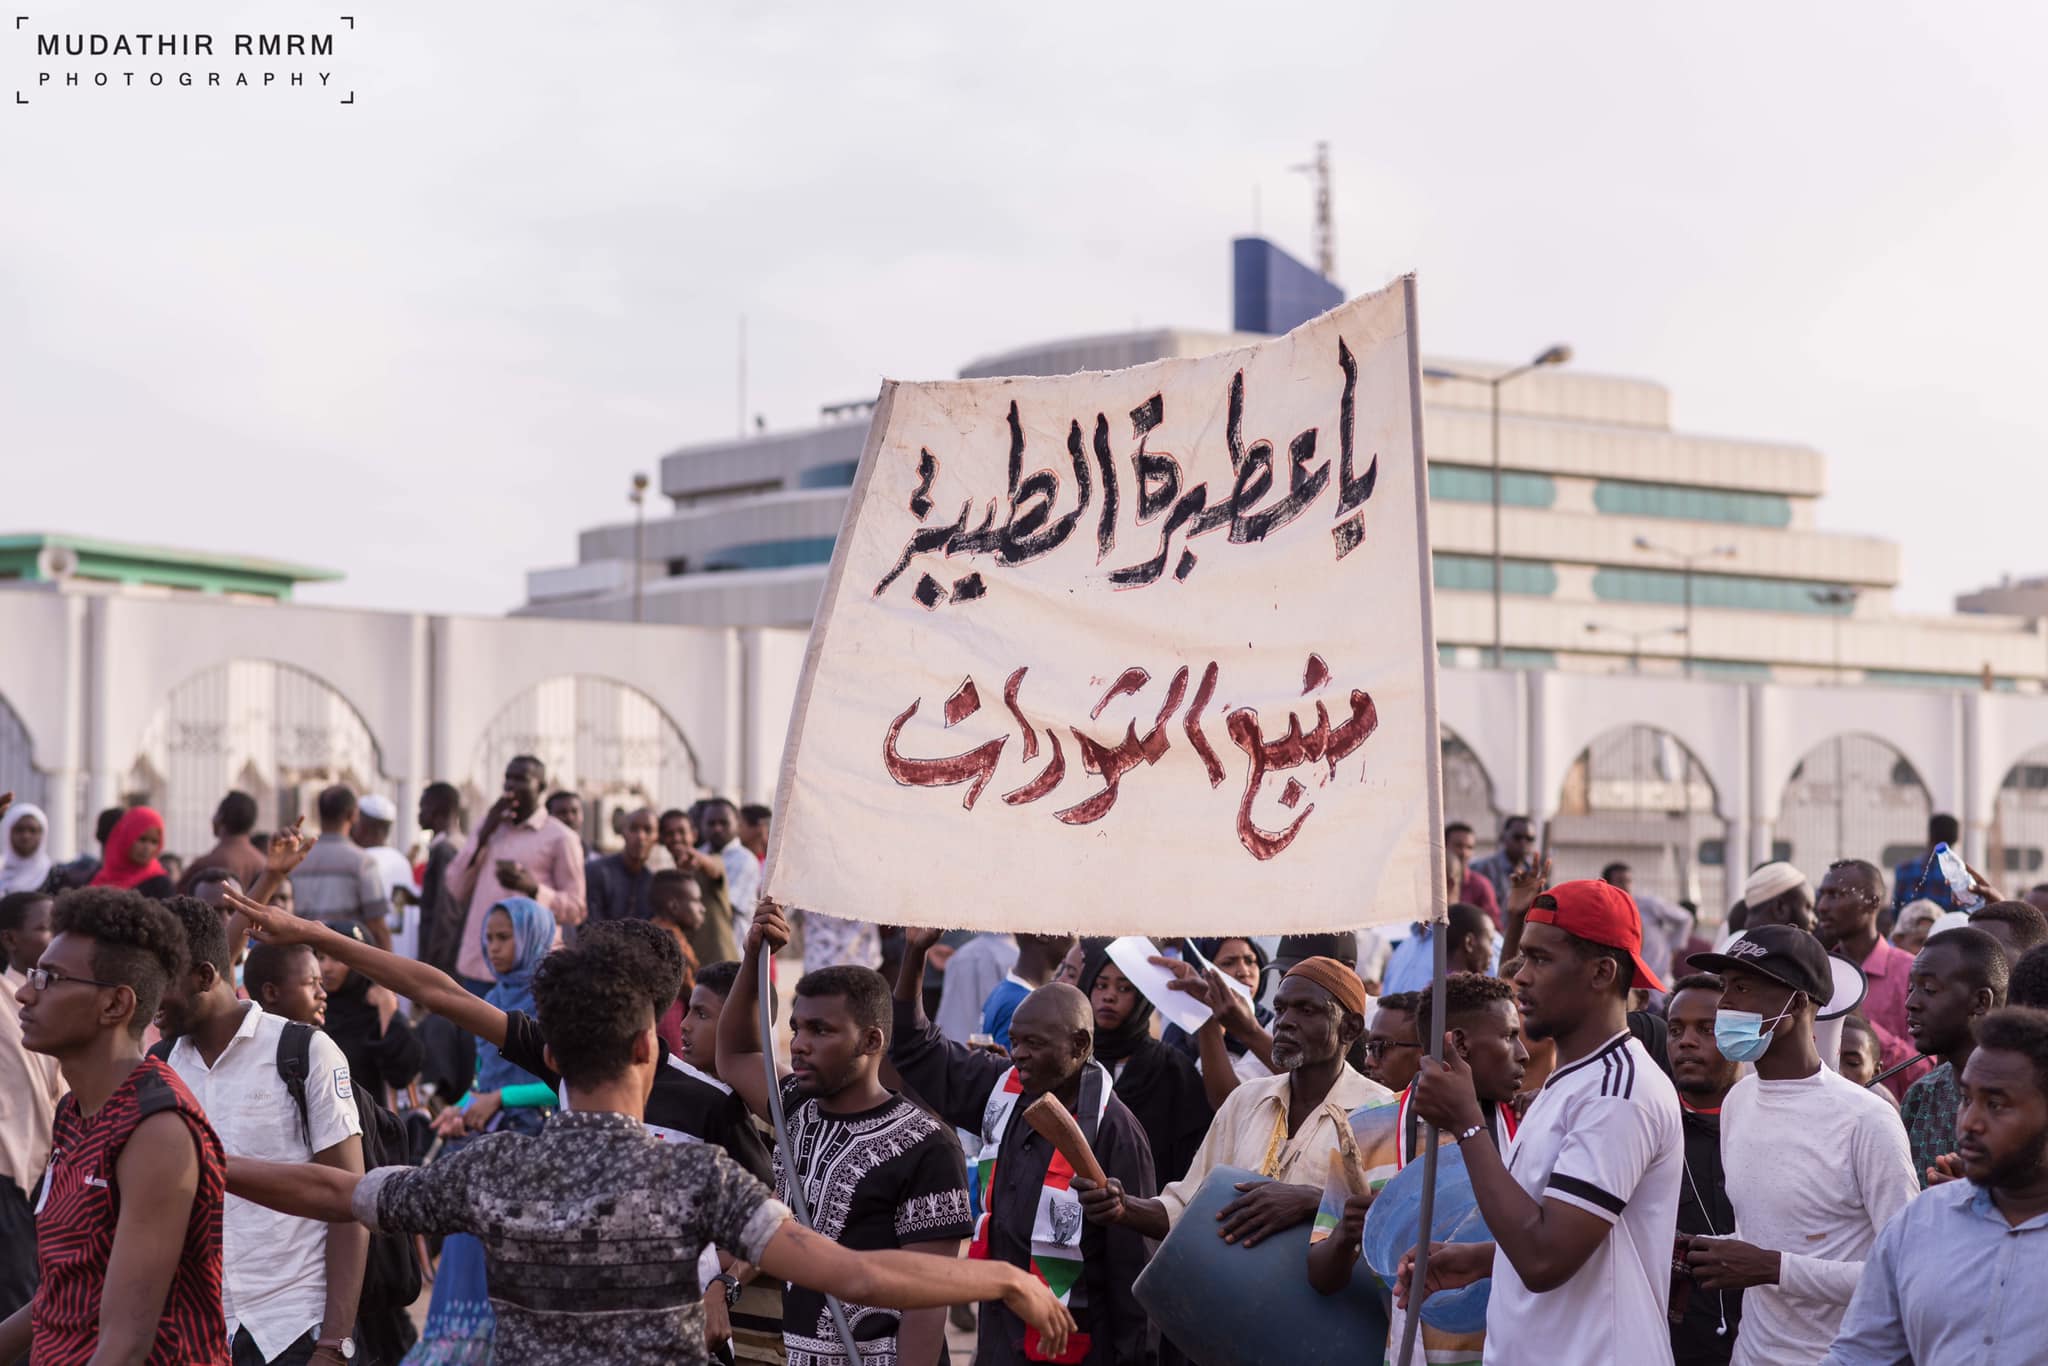 متظاهرون ومتظاهرون في الخرطوم السودان. الصورة Mudathir Rmrm